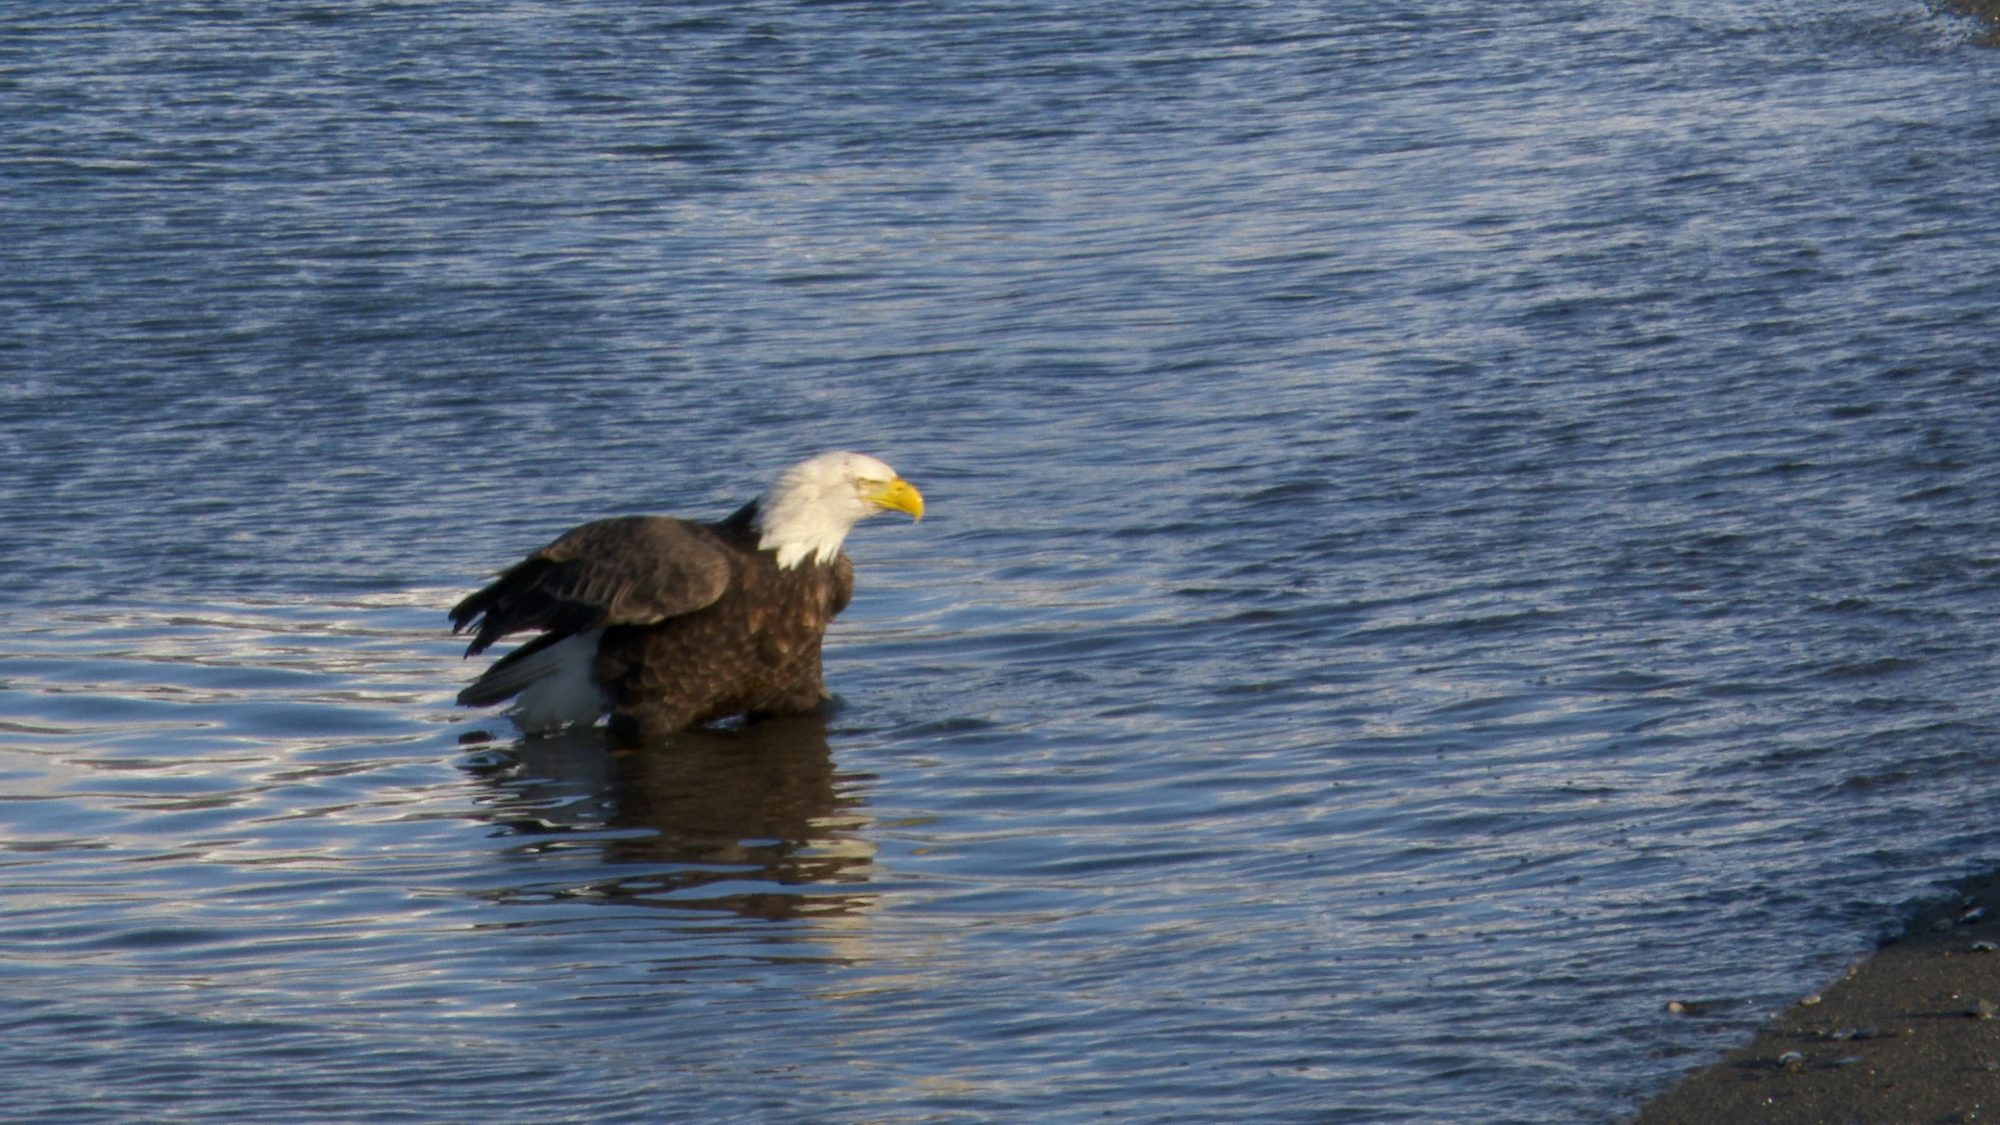 Bald Eagles in the surf – Alaska 2020